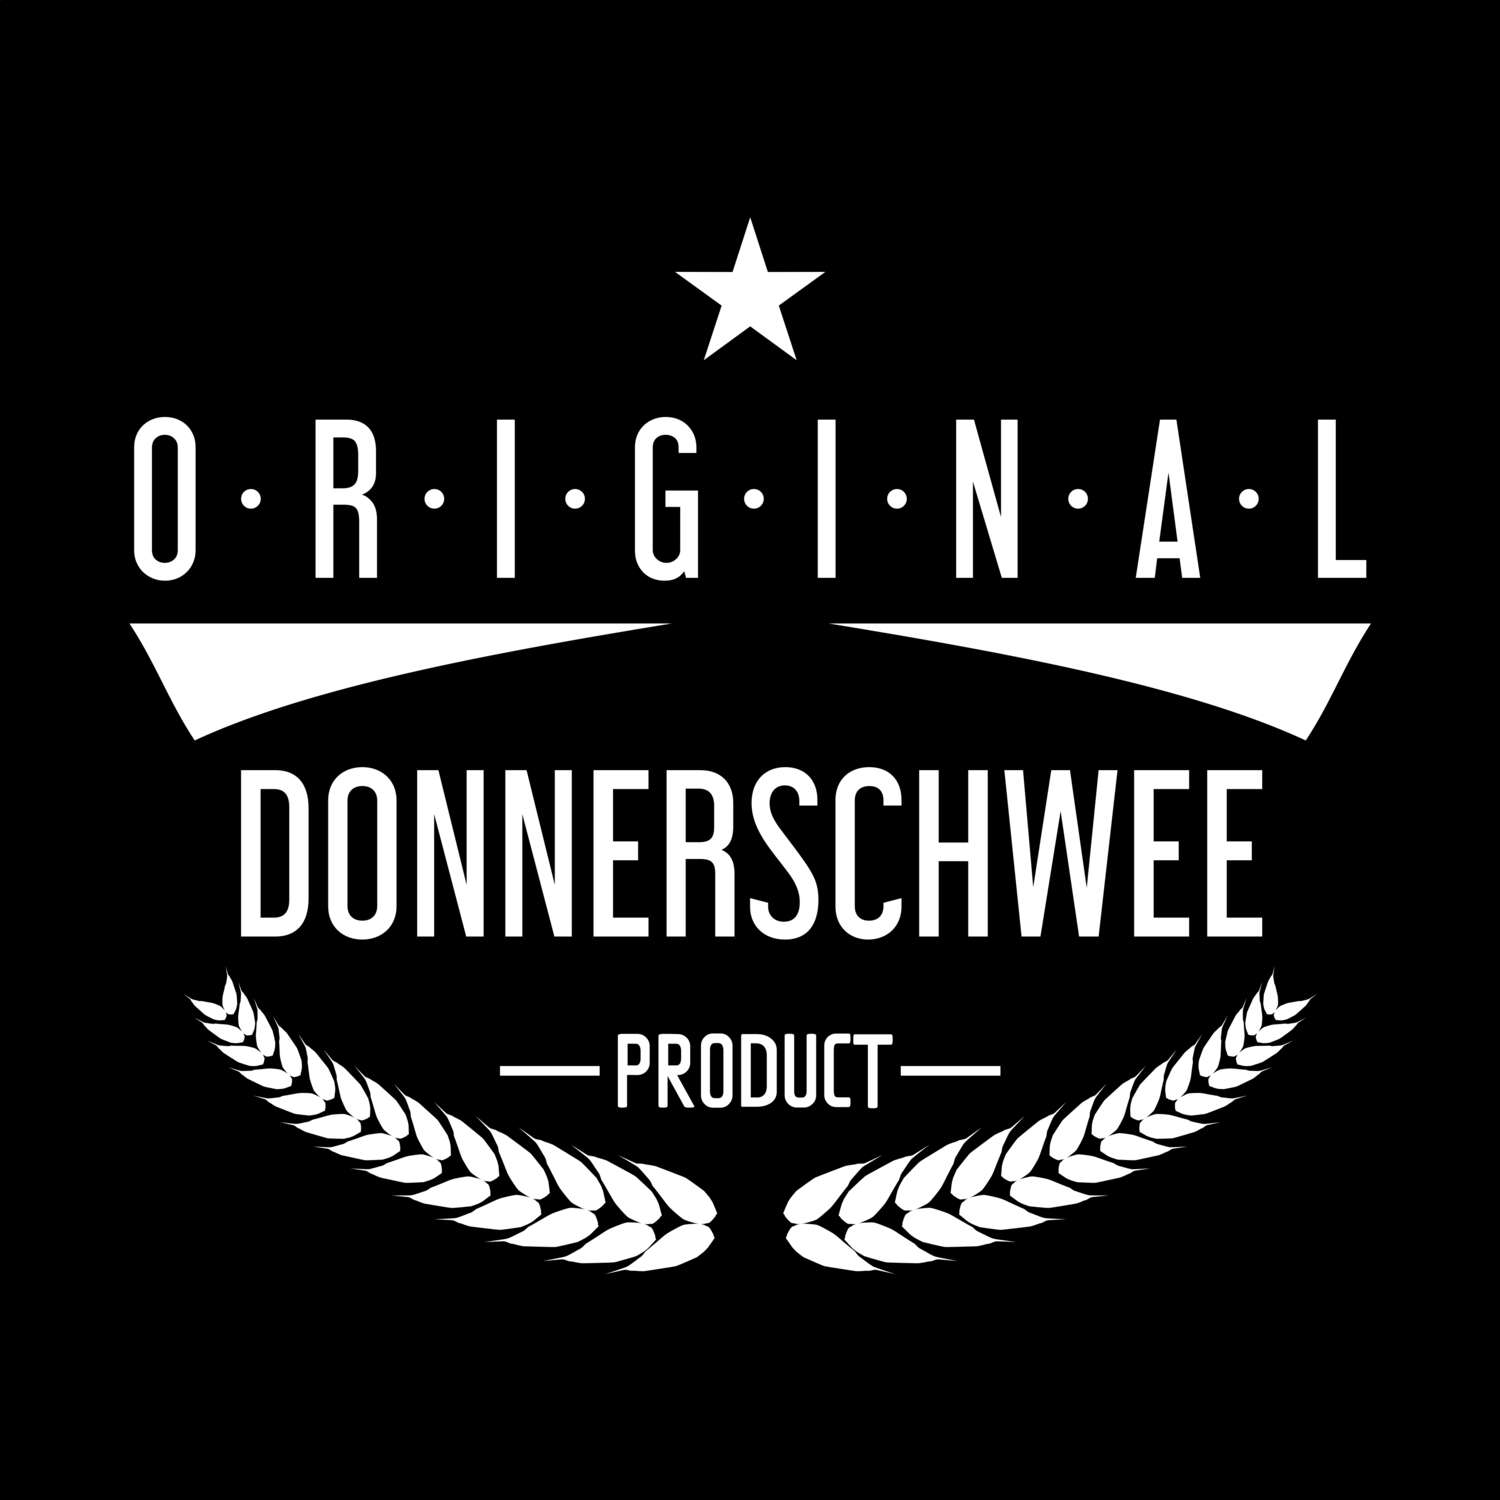 Donnerschwee T-Shirt »Original Product«